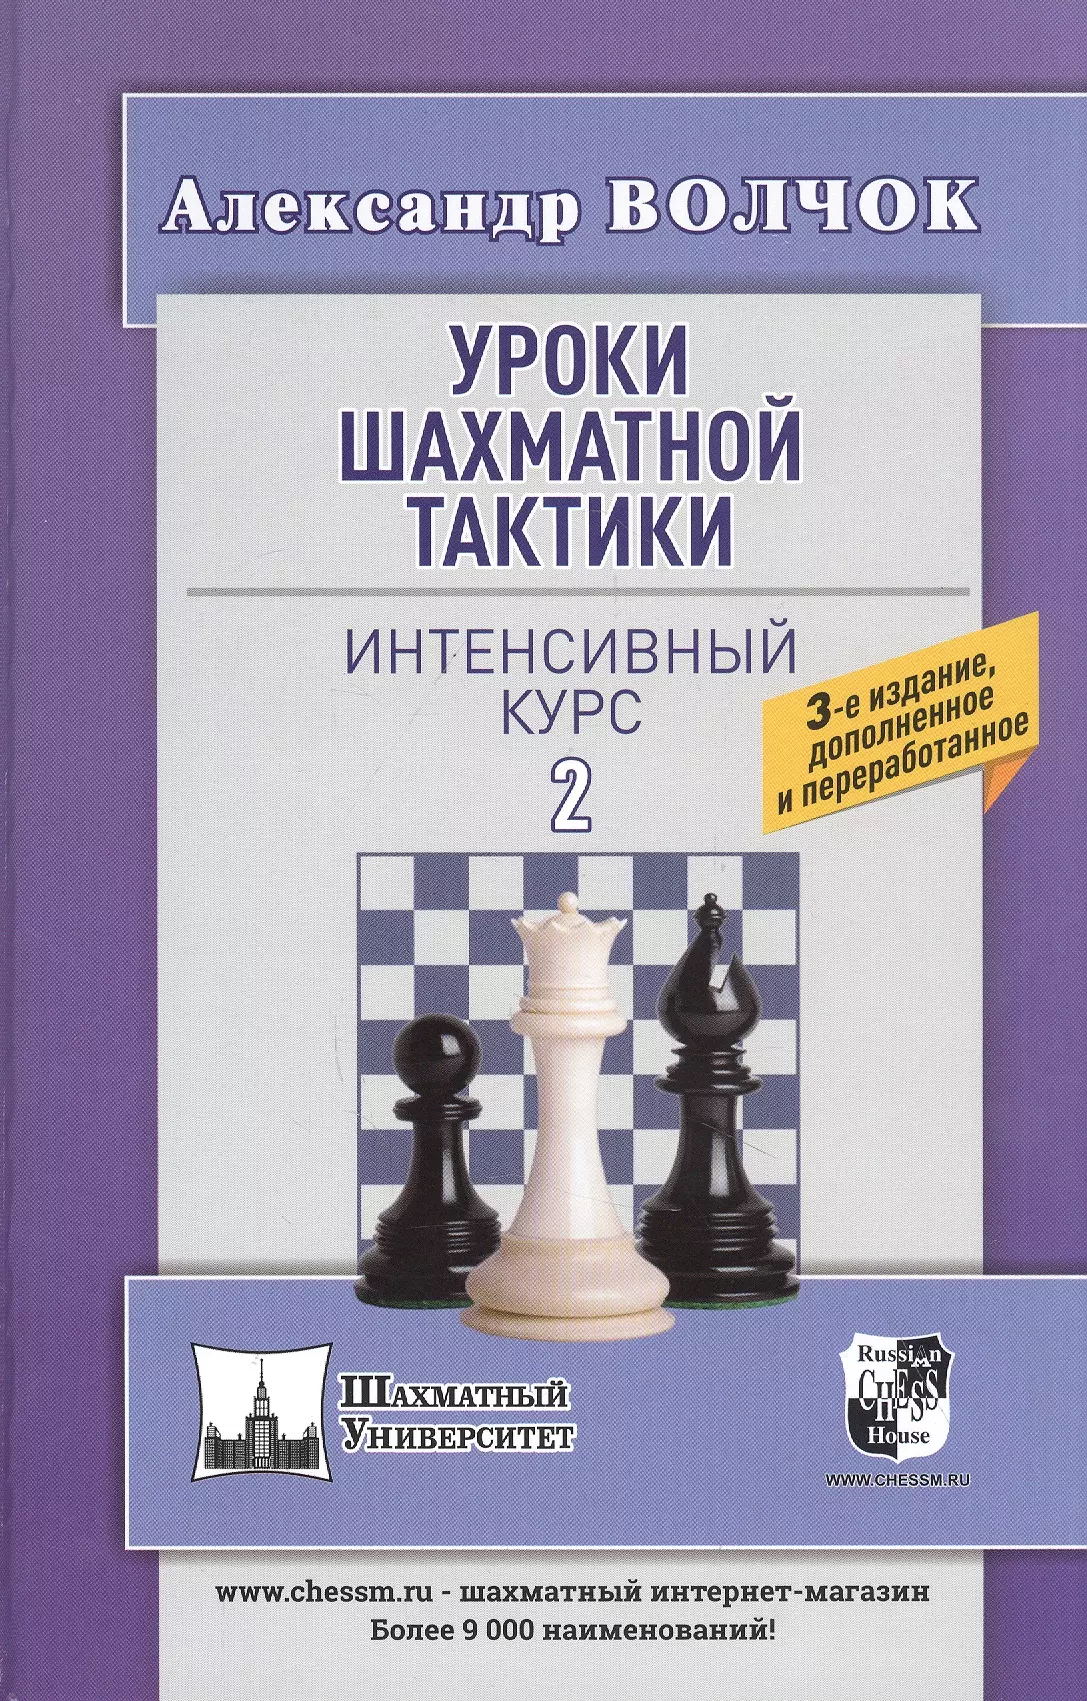 уроки шахматной тактики 1 начальный курс волчок а Уроки шахматной тактики. Интенсивный курс 2